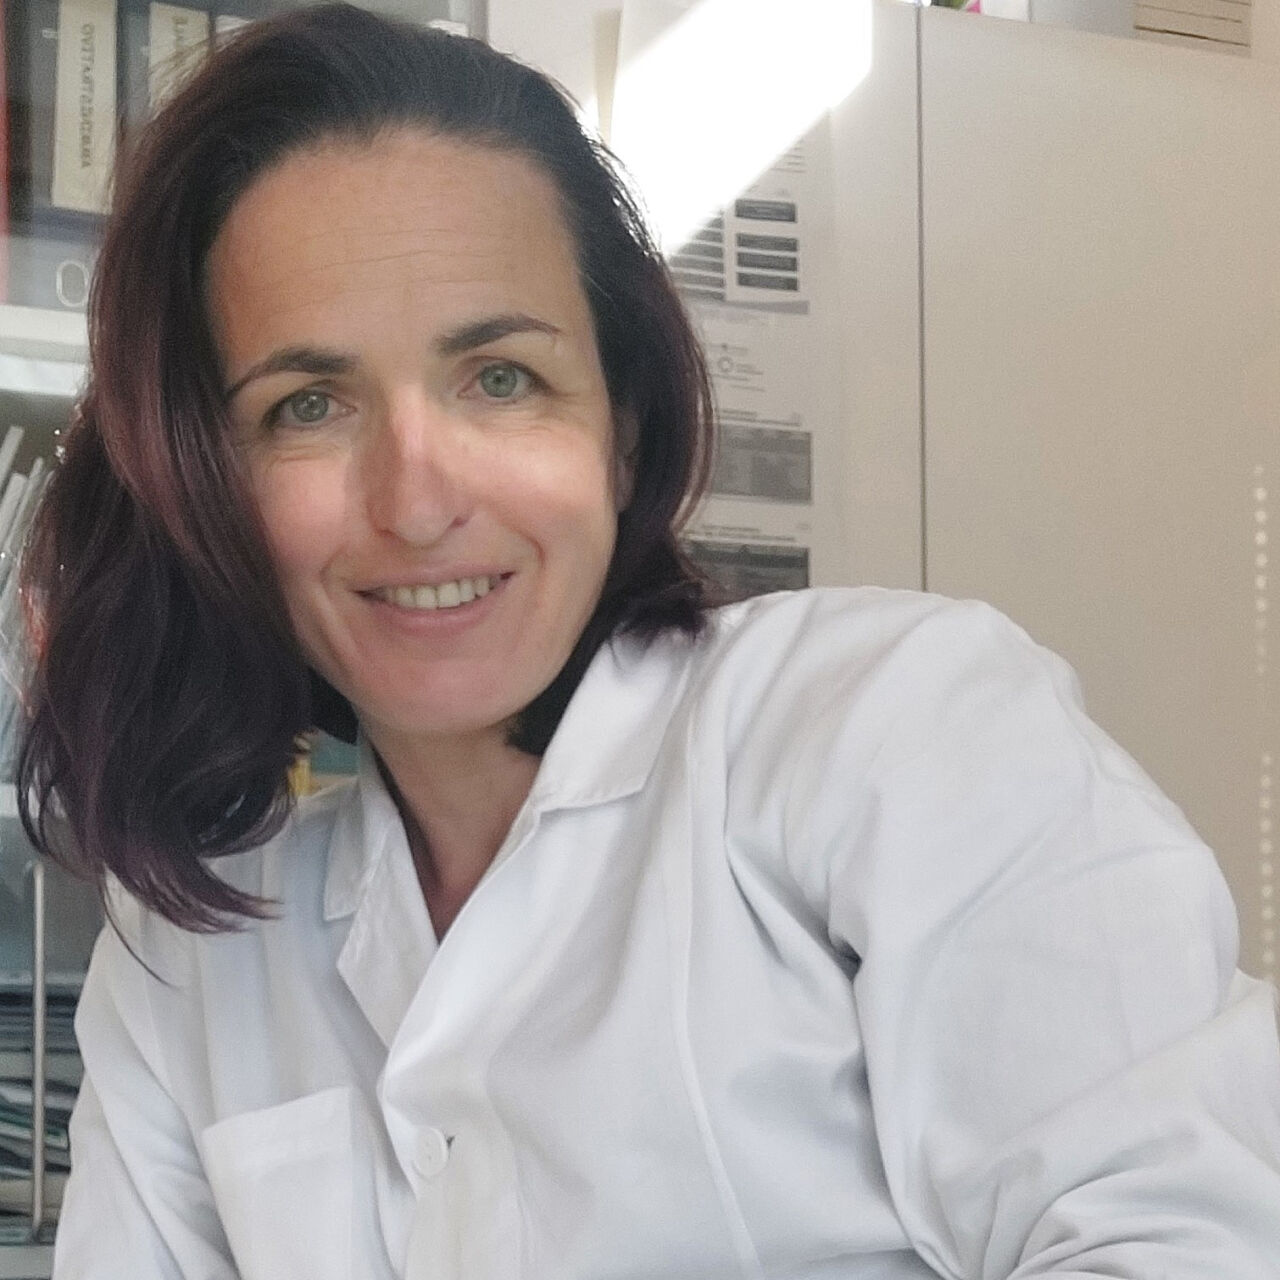 Nuova collaborazione con la Dott.ssa Patrizia Raffl - riavvio dell'ambulatorio di fisiatria e riabilitazione dott.ssa patrizia raffl 1